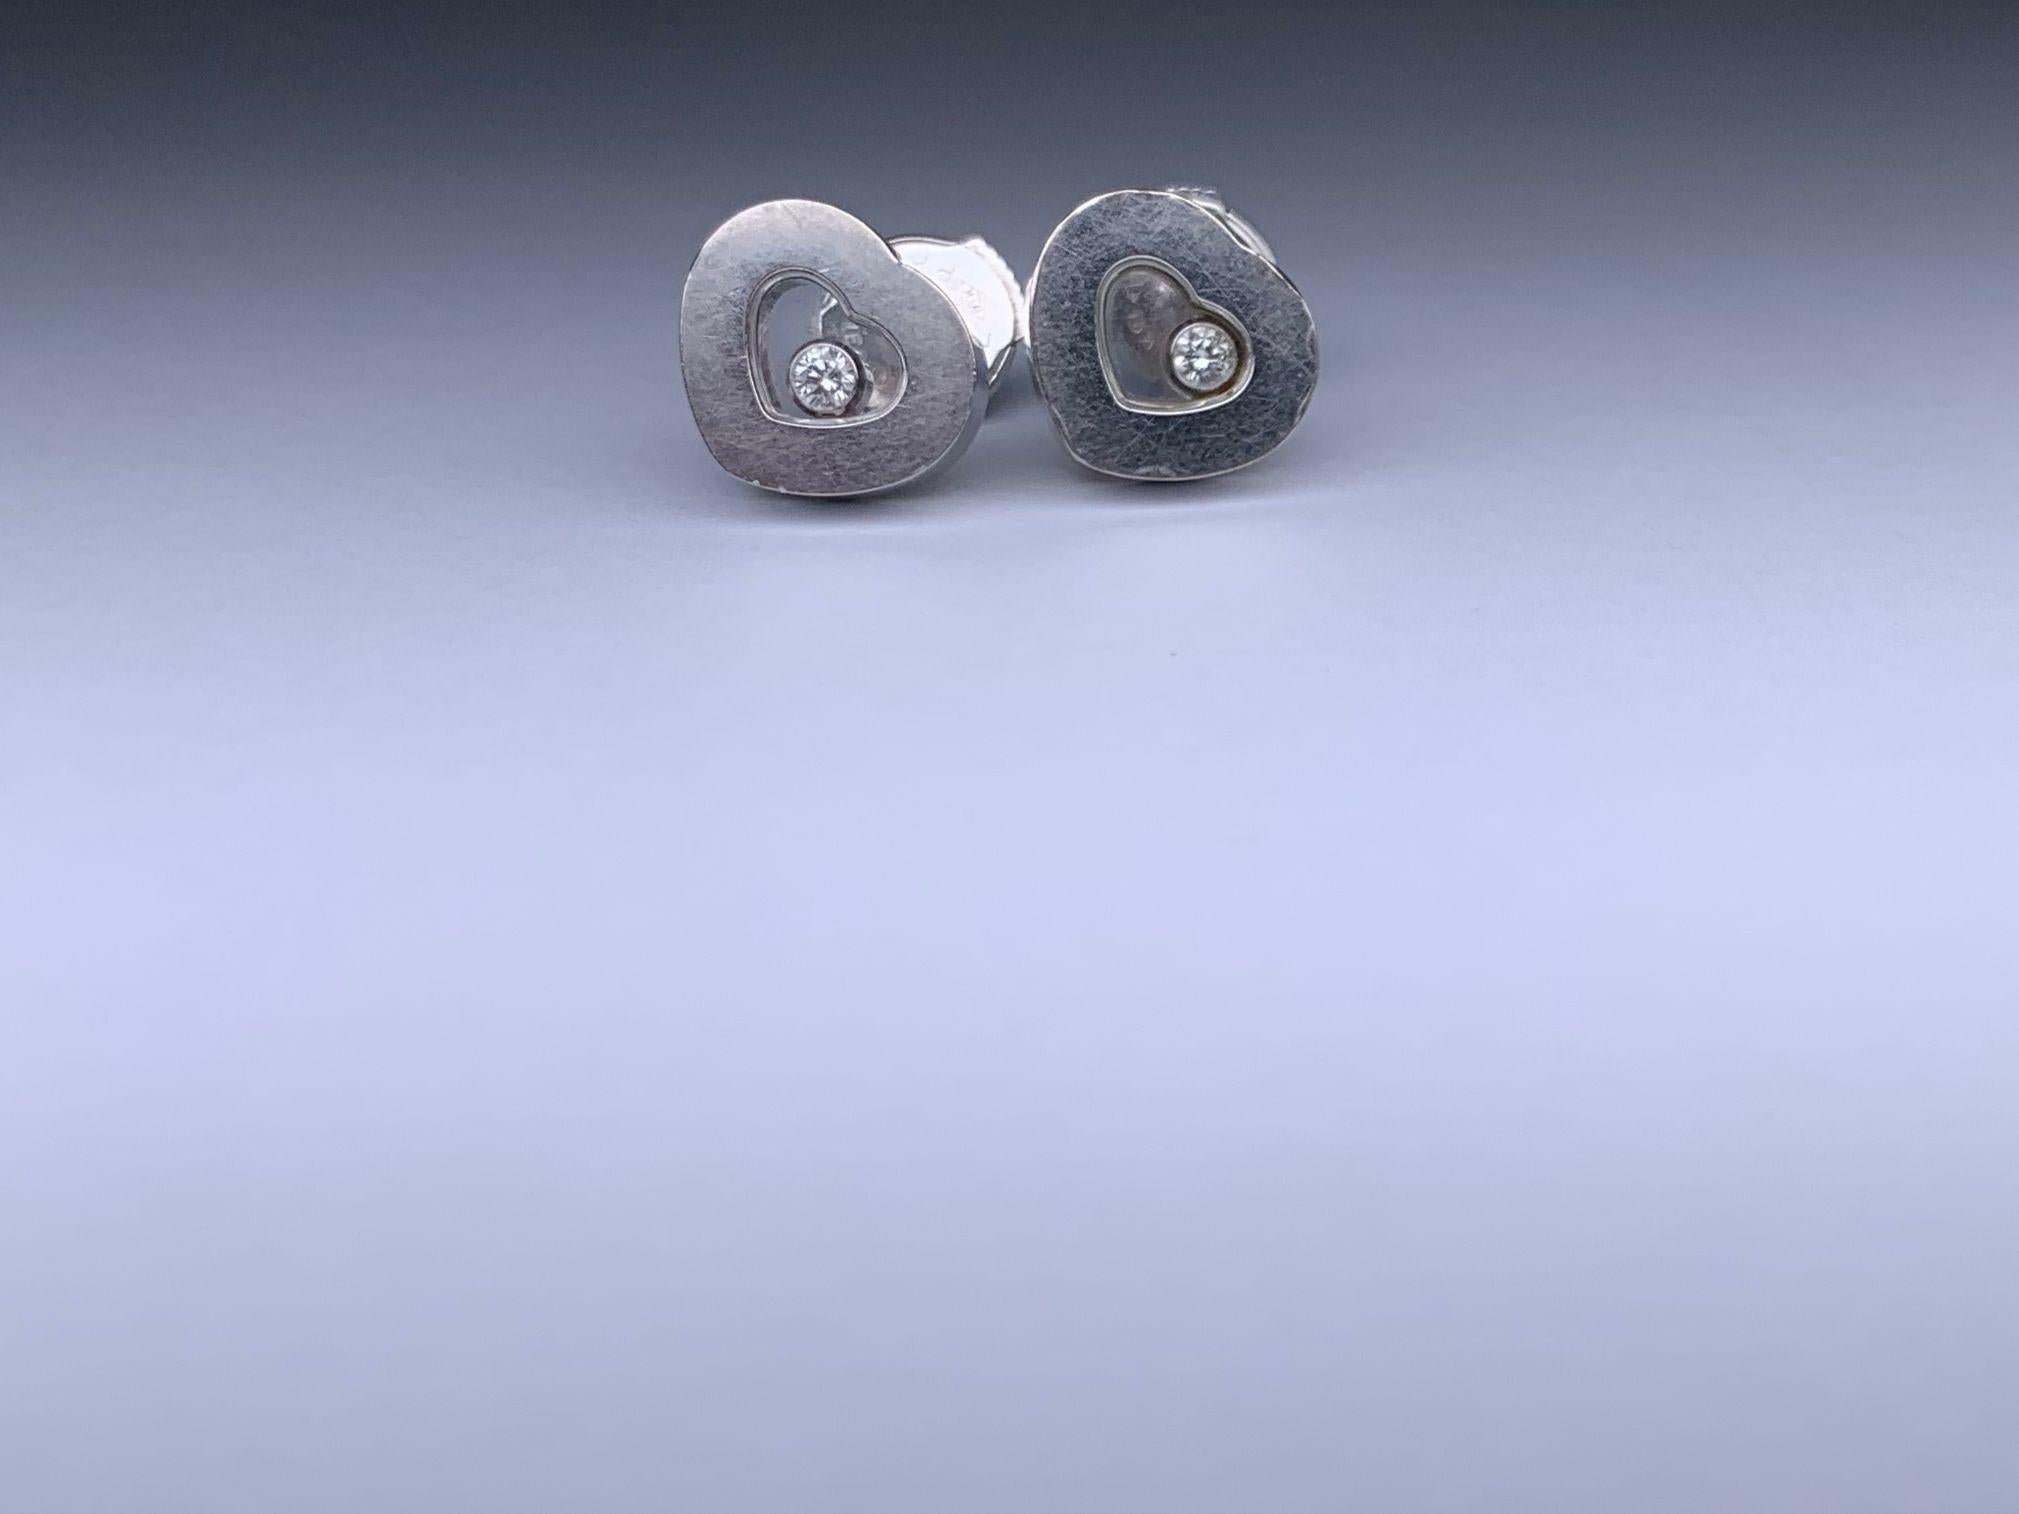 Marke : Chopard
Beschreibung: Chopard Happy Diamond Ohrringe - 8.2g
Metall-Typ: 750WG/Weißgold
Gewicht 8,2g
Zustand: Gebraucht; leichte Gebrauchsspuren
Box -  Nicht inbegriffen
Papiere - Eingeschlossen
